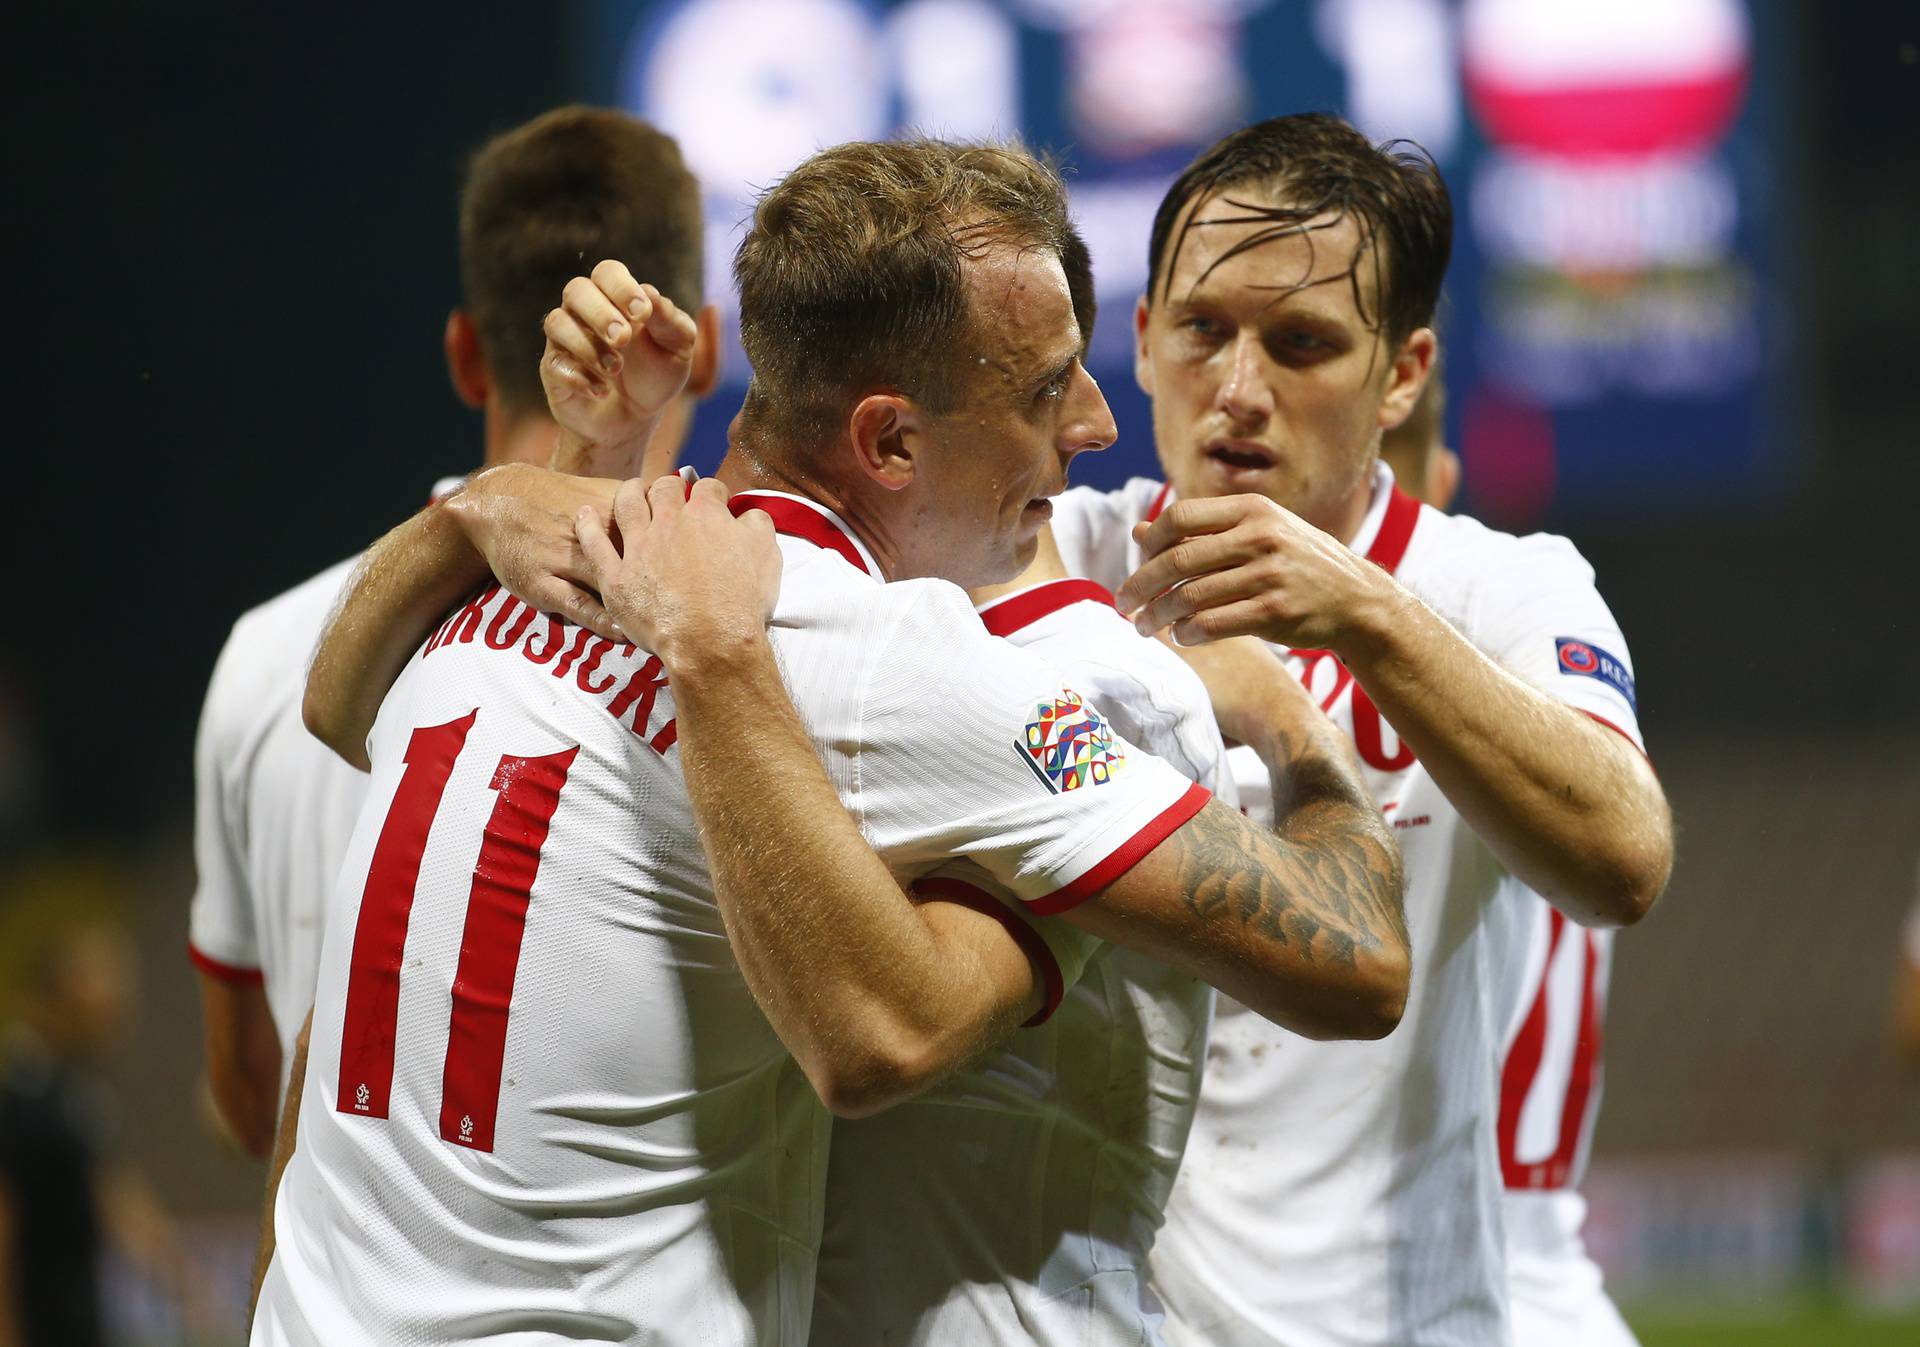 UEFA Nations League - League A - Group 1 - Bosnia and Herzegovina v Poland